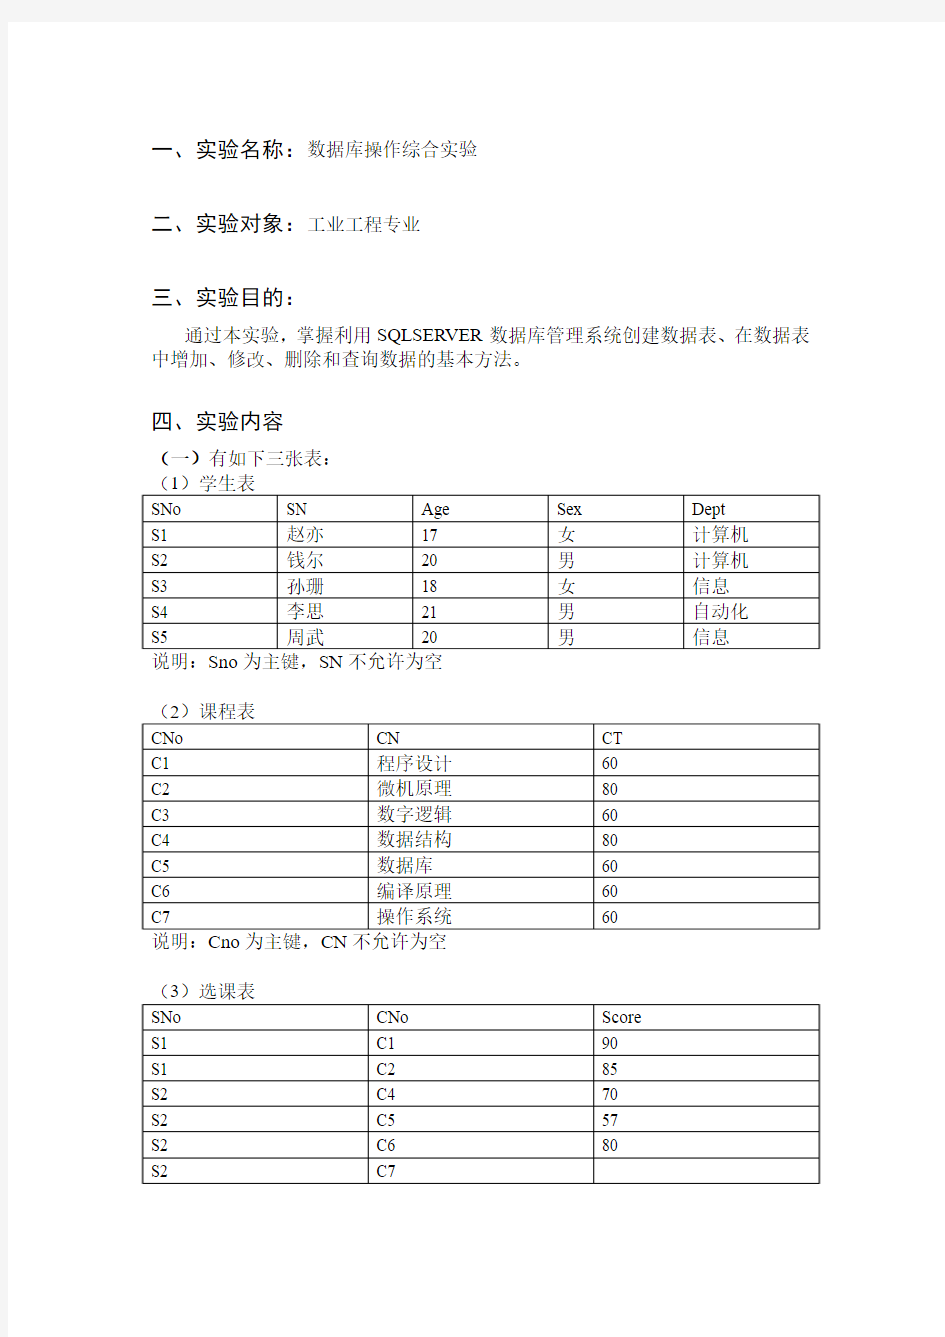 中国矿业大学《数据库实验报告》完整版